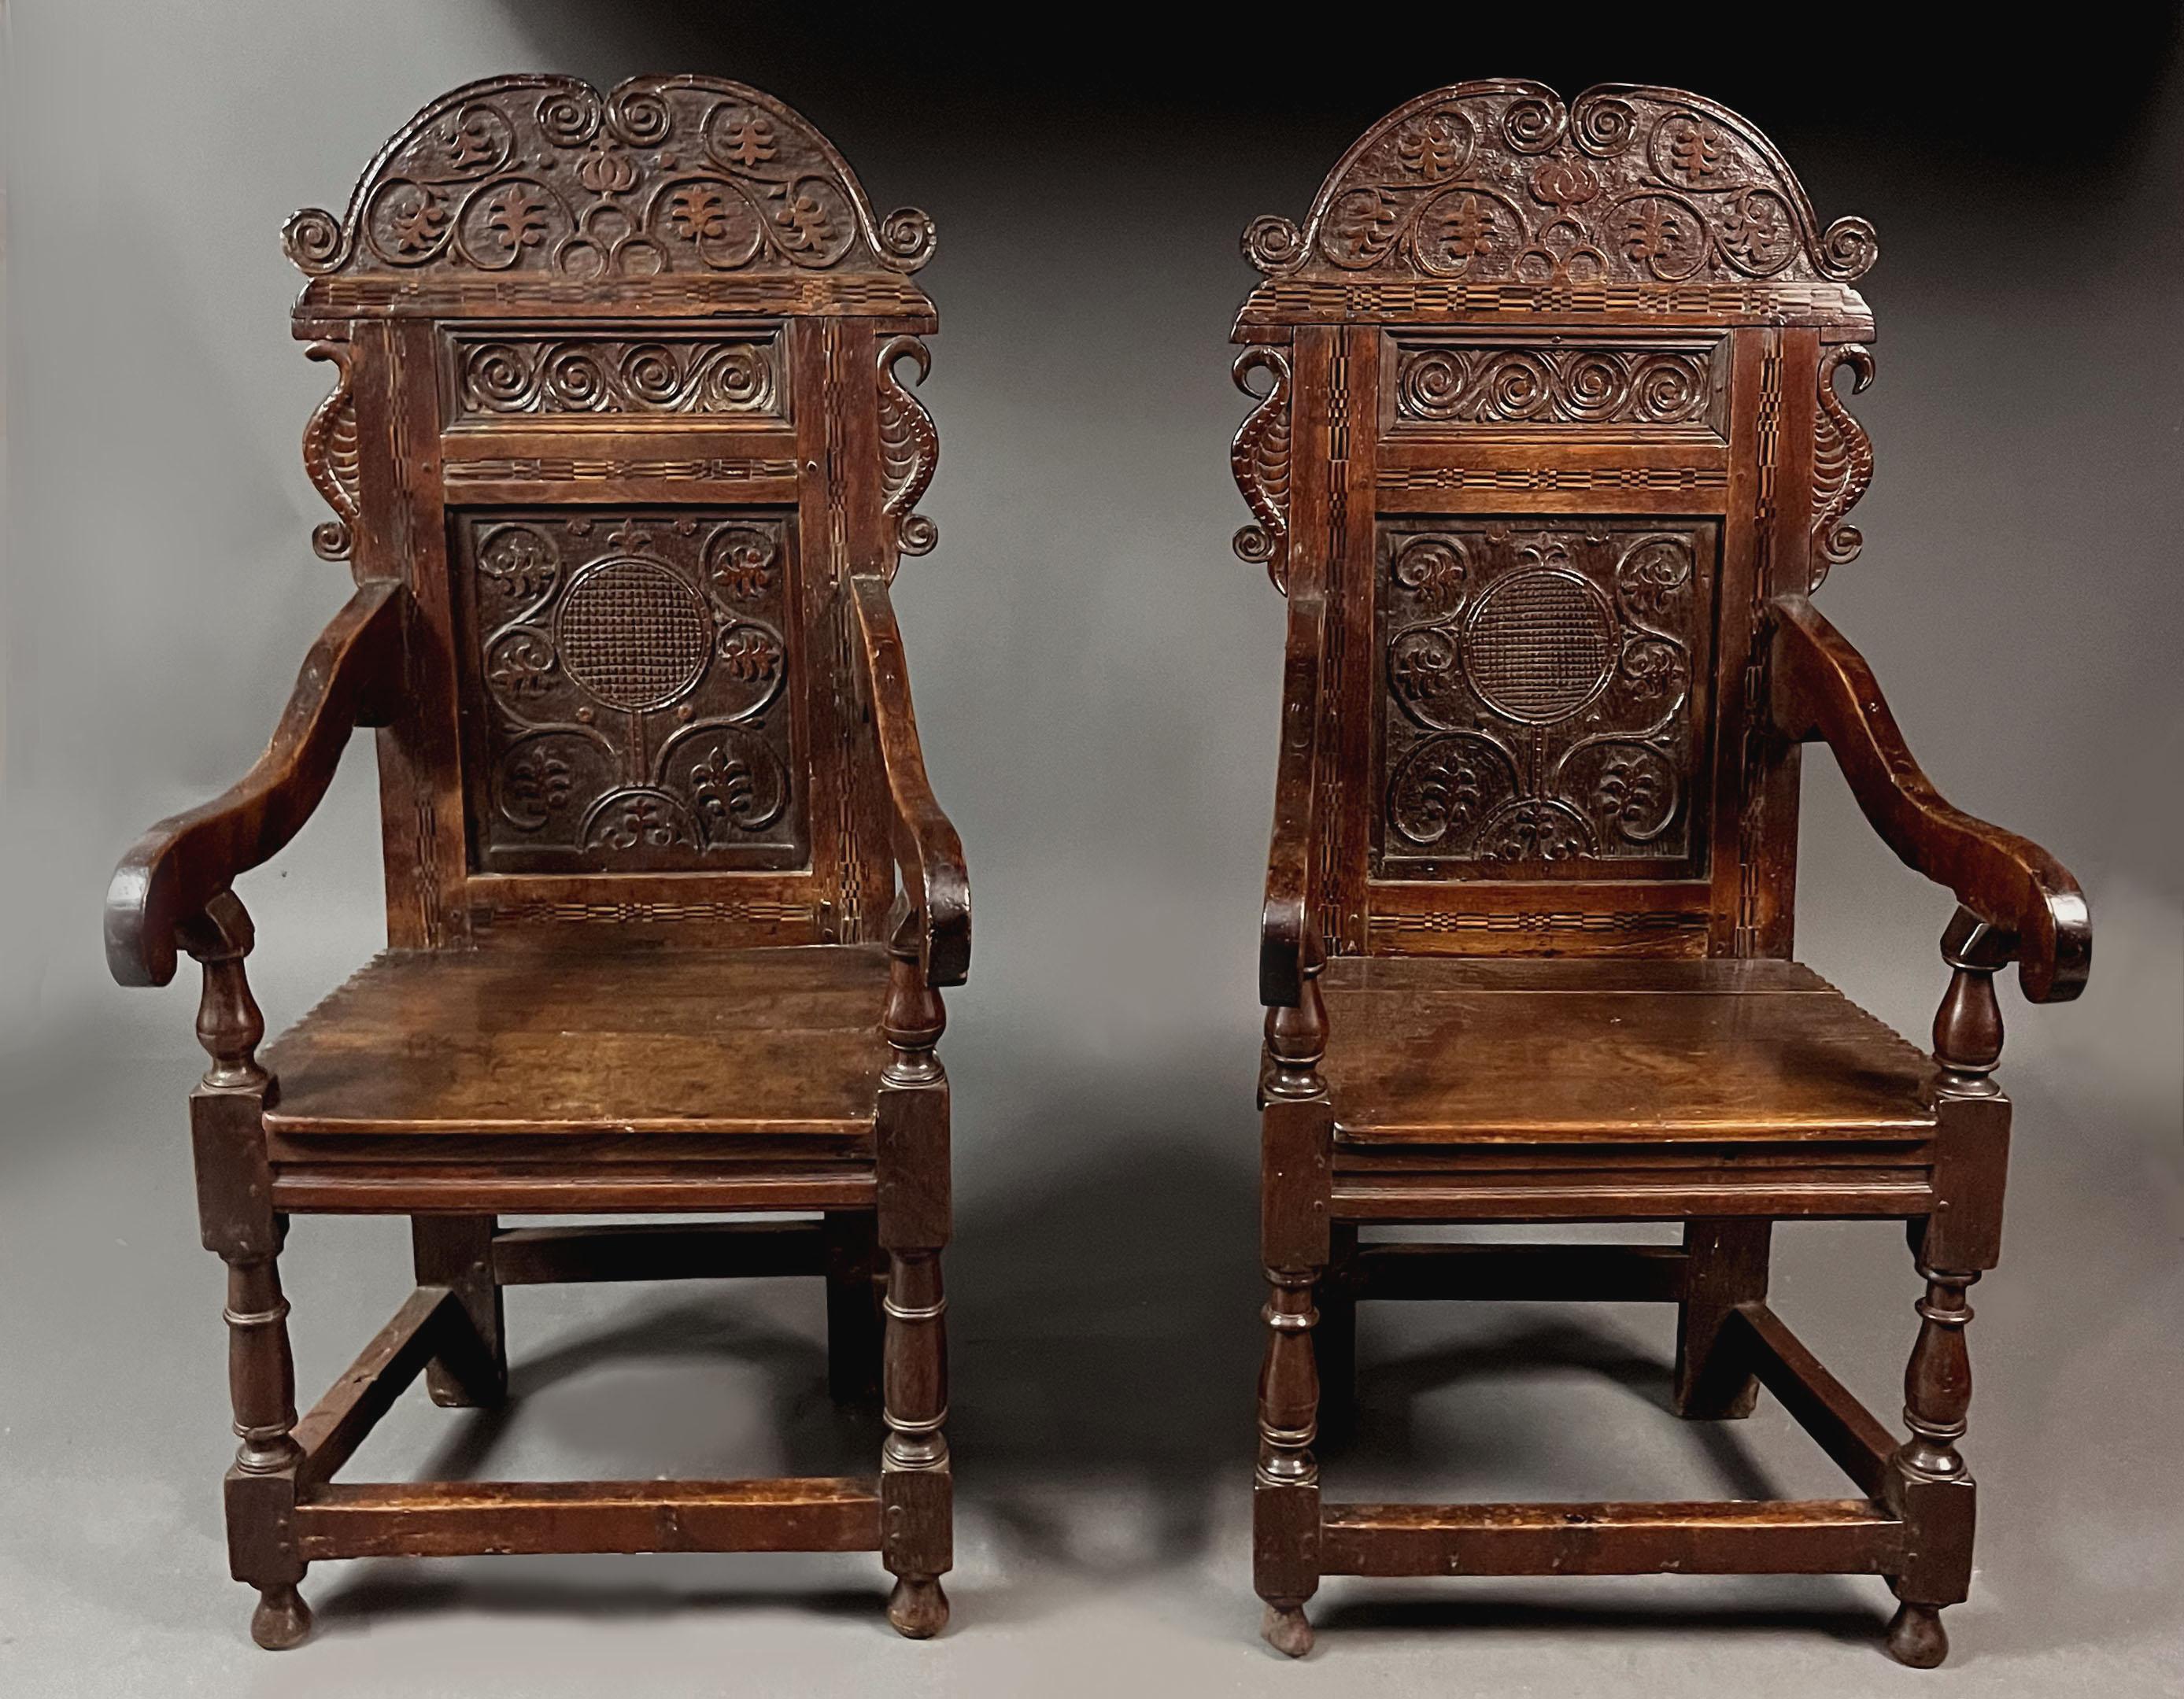 Rare paire de chaises en chêne de la fin du XVIIe siècle. Détail très frappant : grande barre de faîte avec des détails sculptés très similaires à ceux du panneau principal et un autre panneau plus petit avec 4 volutes sculptées, des 